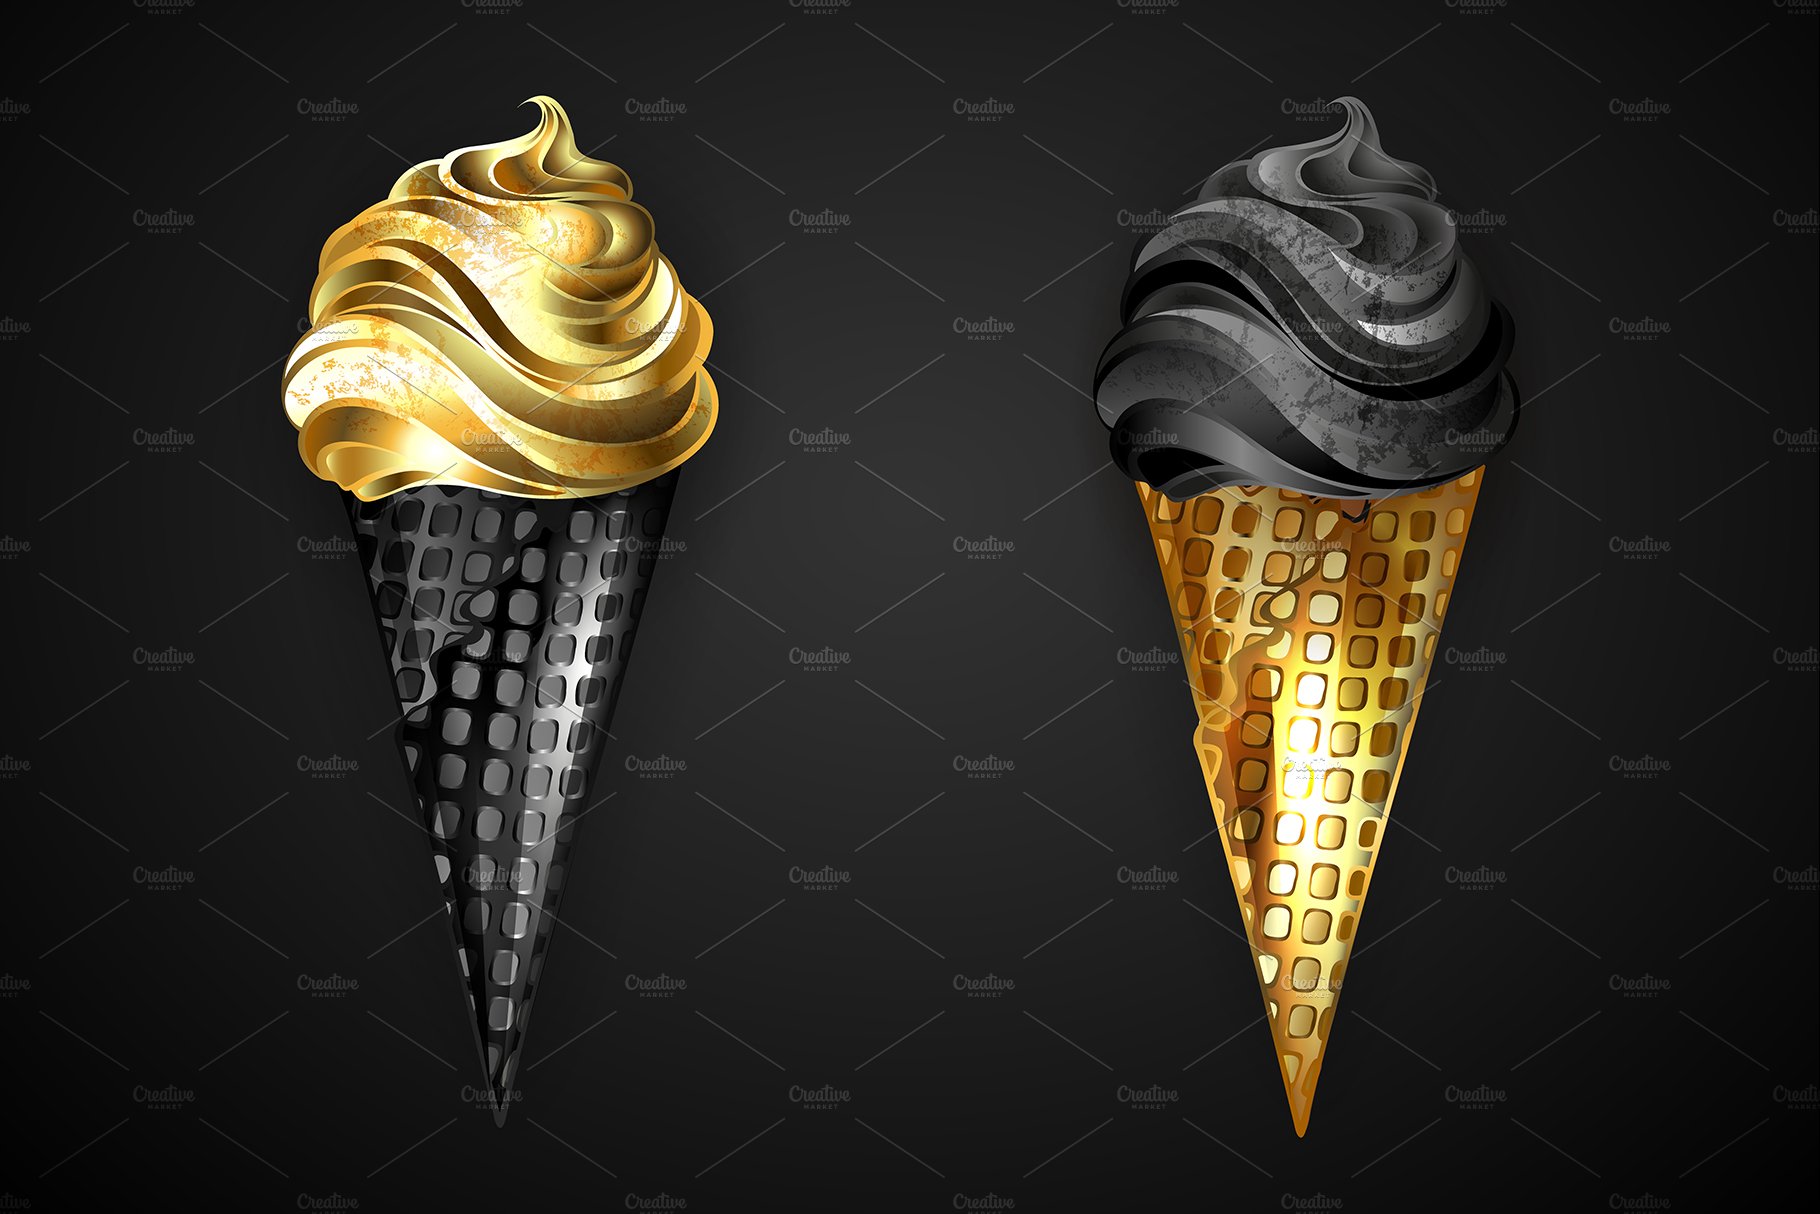 Jewelry Ice Cream cover image.